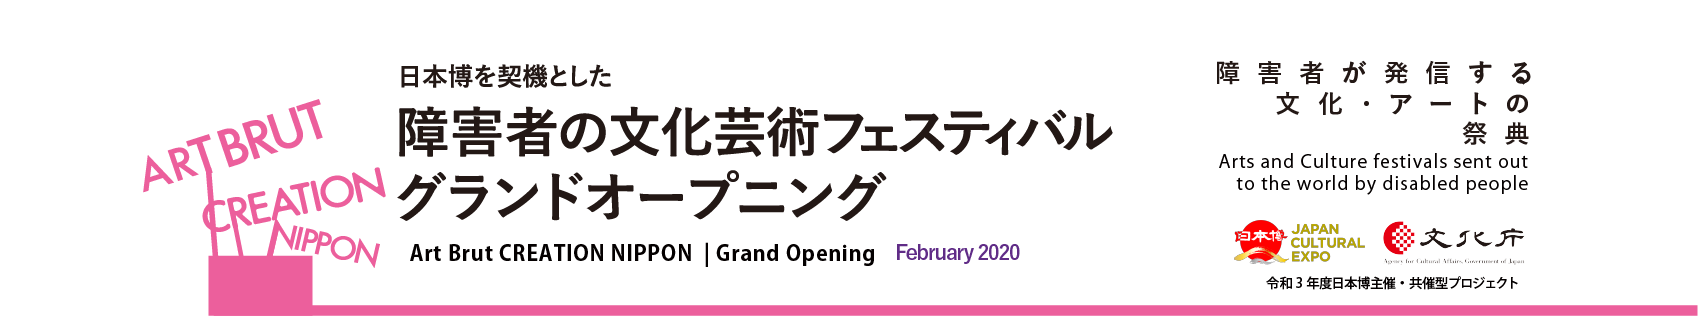 東京2020大会・日本博を契機とした障害者の文化芸術フェスティバル